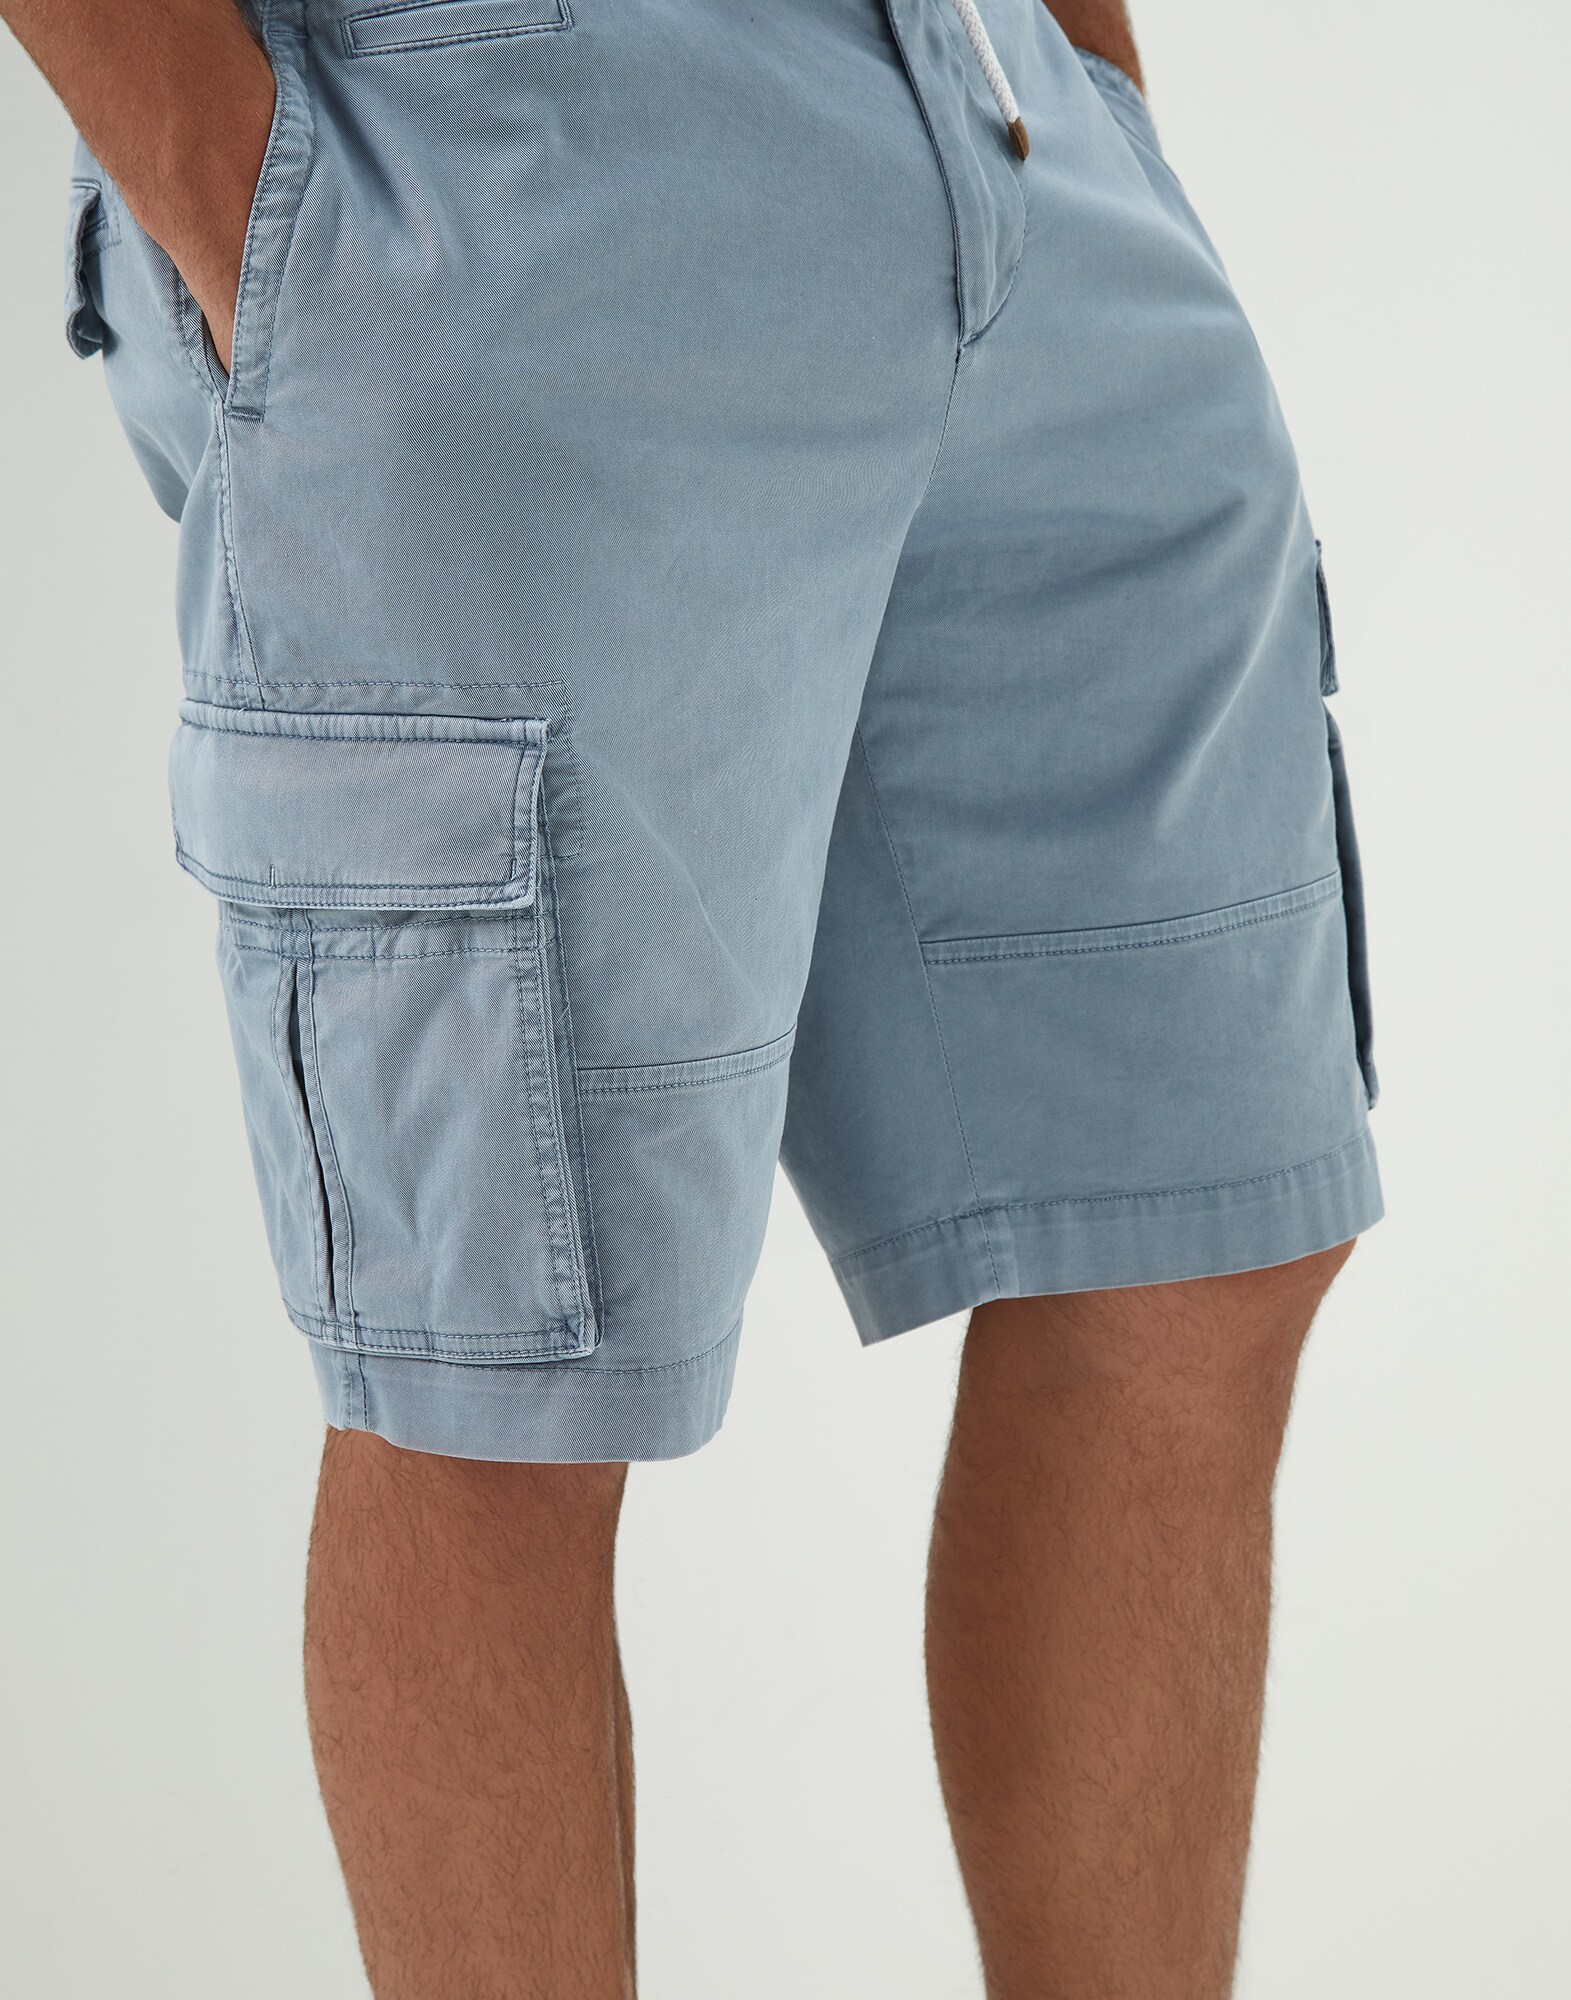 Shorts cargo de algodón Brunello Cucinelli de Algodón de hombre Hombre Ropa de Pantalones cortos de Bermudas cargo 